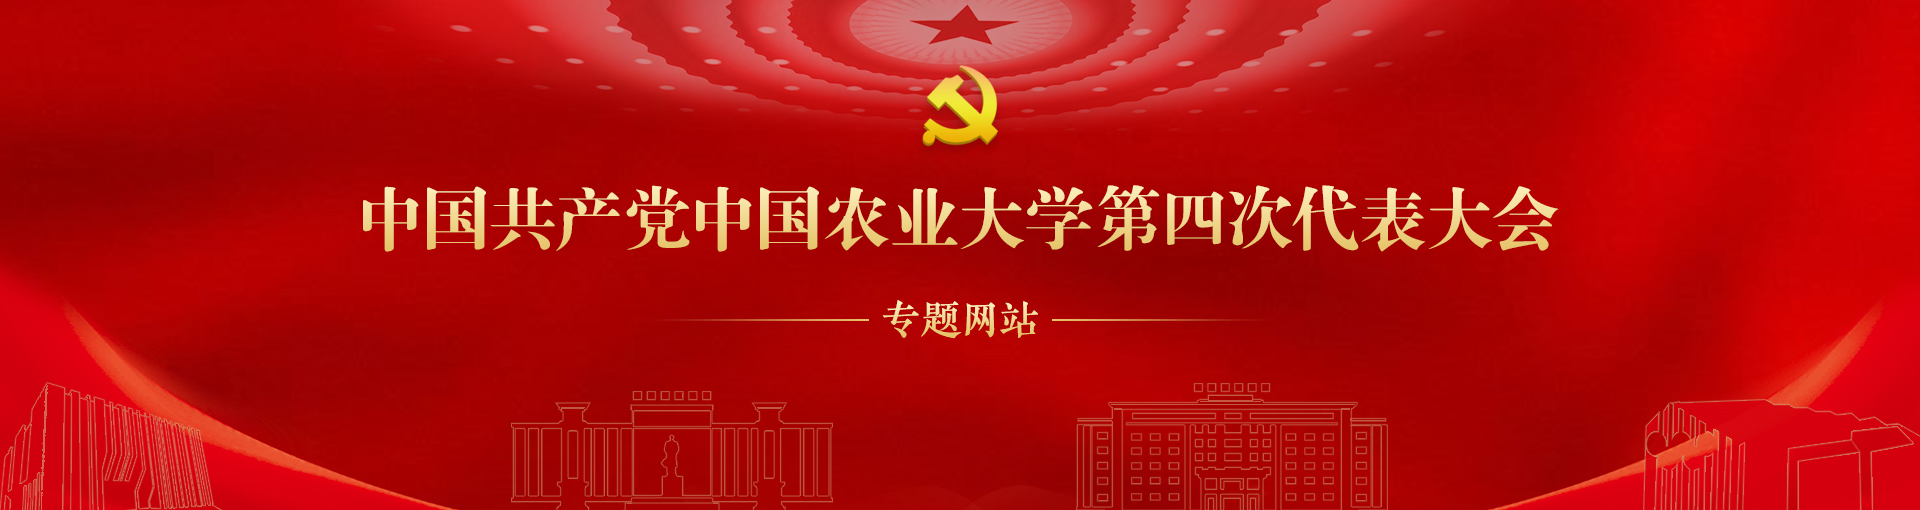 中国共产党中国农业大学第四次代表大会专题网站